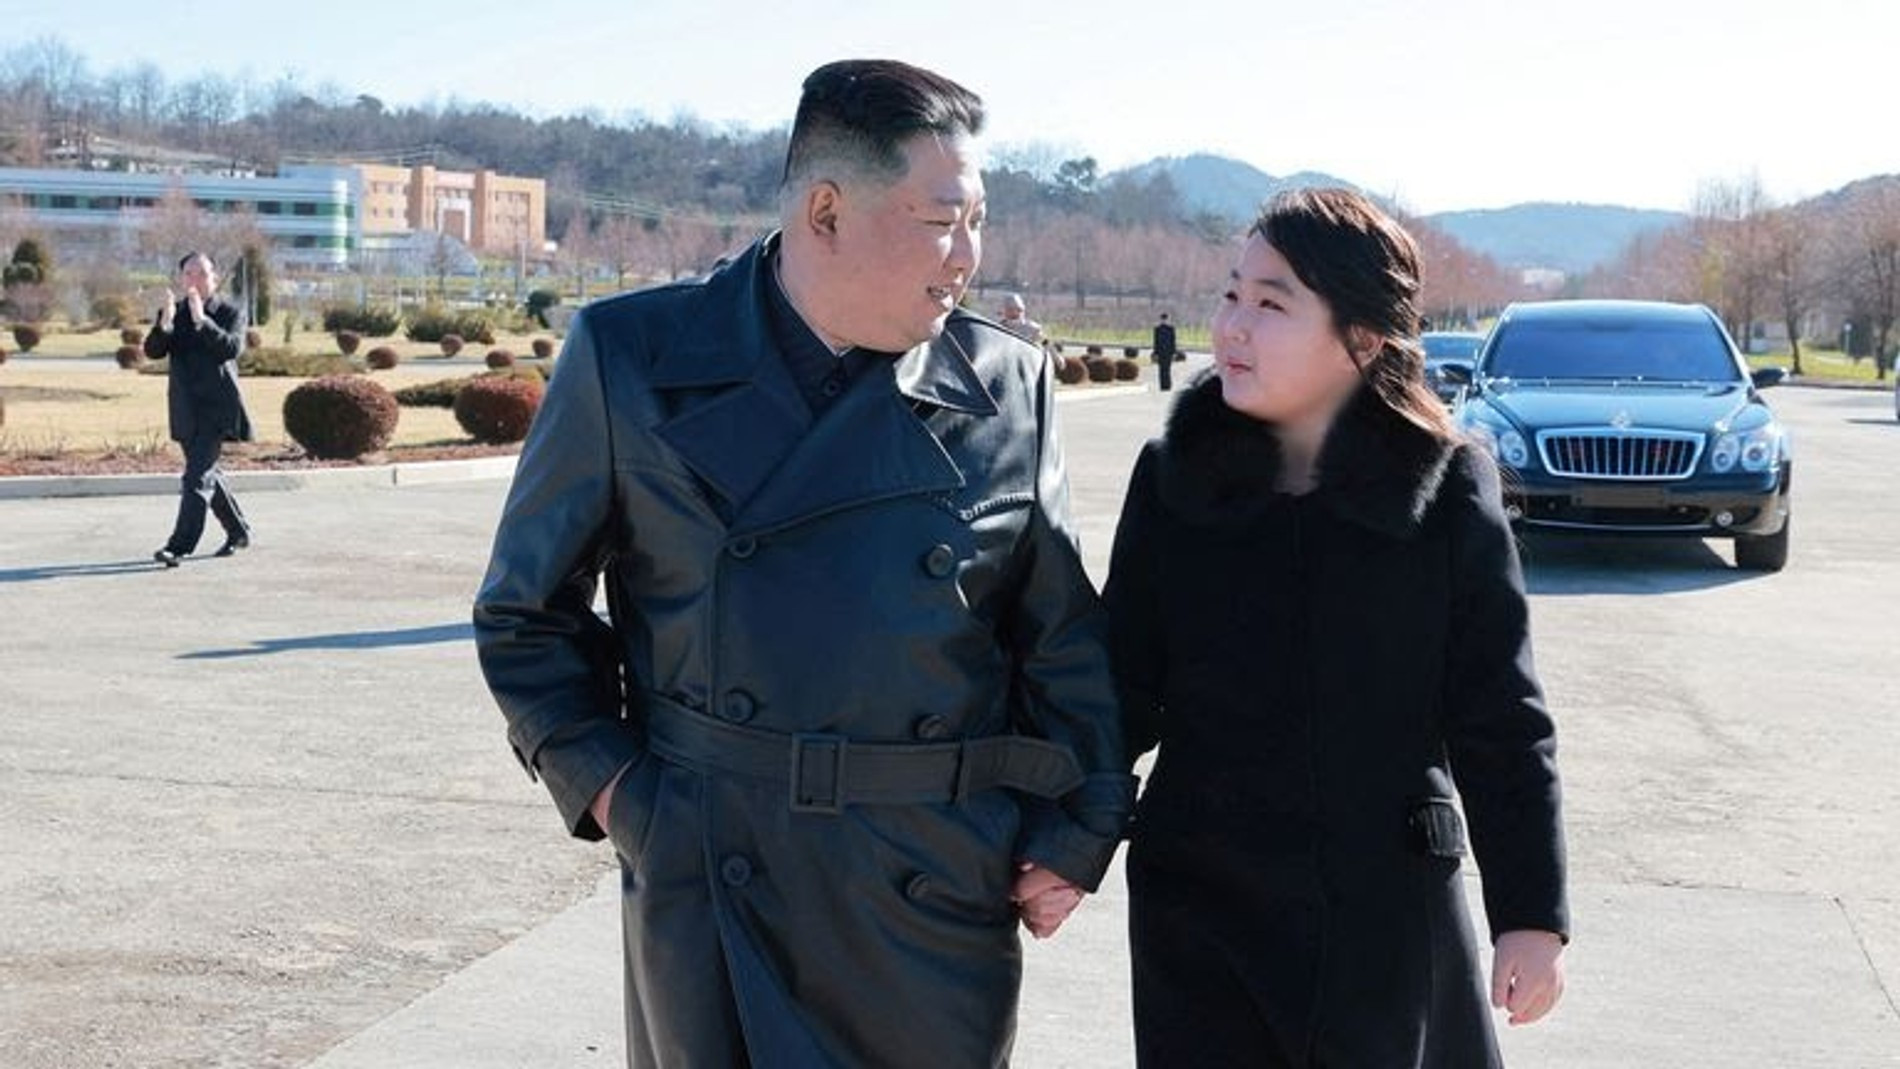 По мнению наблюдателей, старшей дочери Кима 12 или 13 лет
Фото: AP